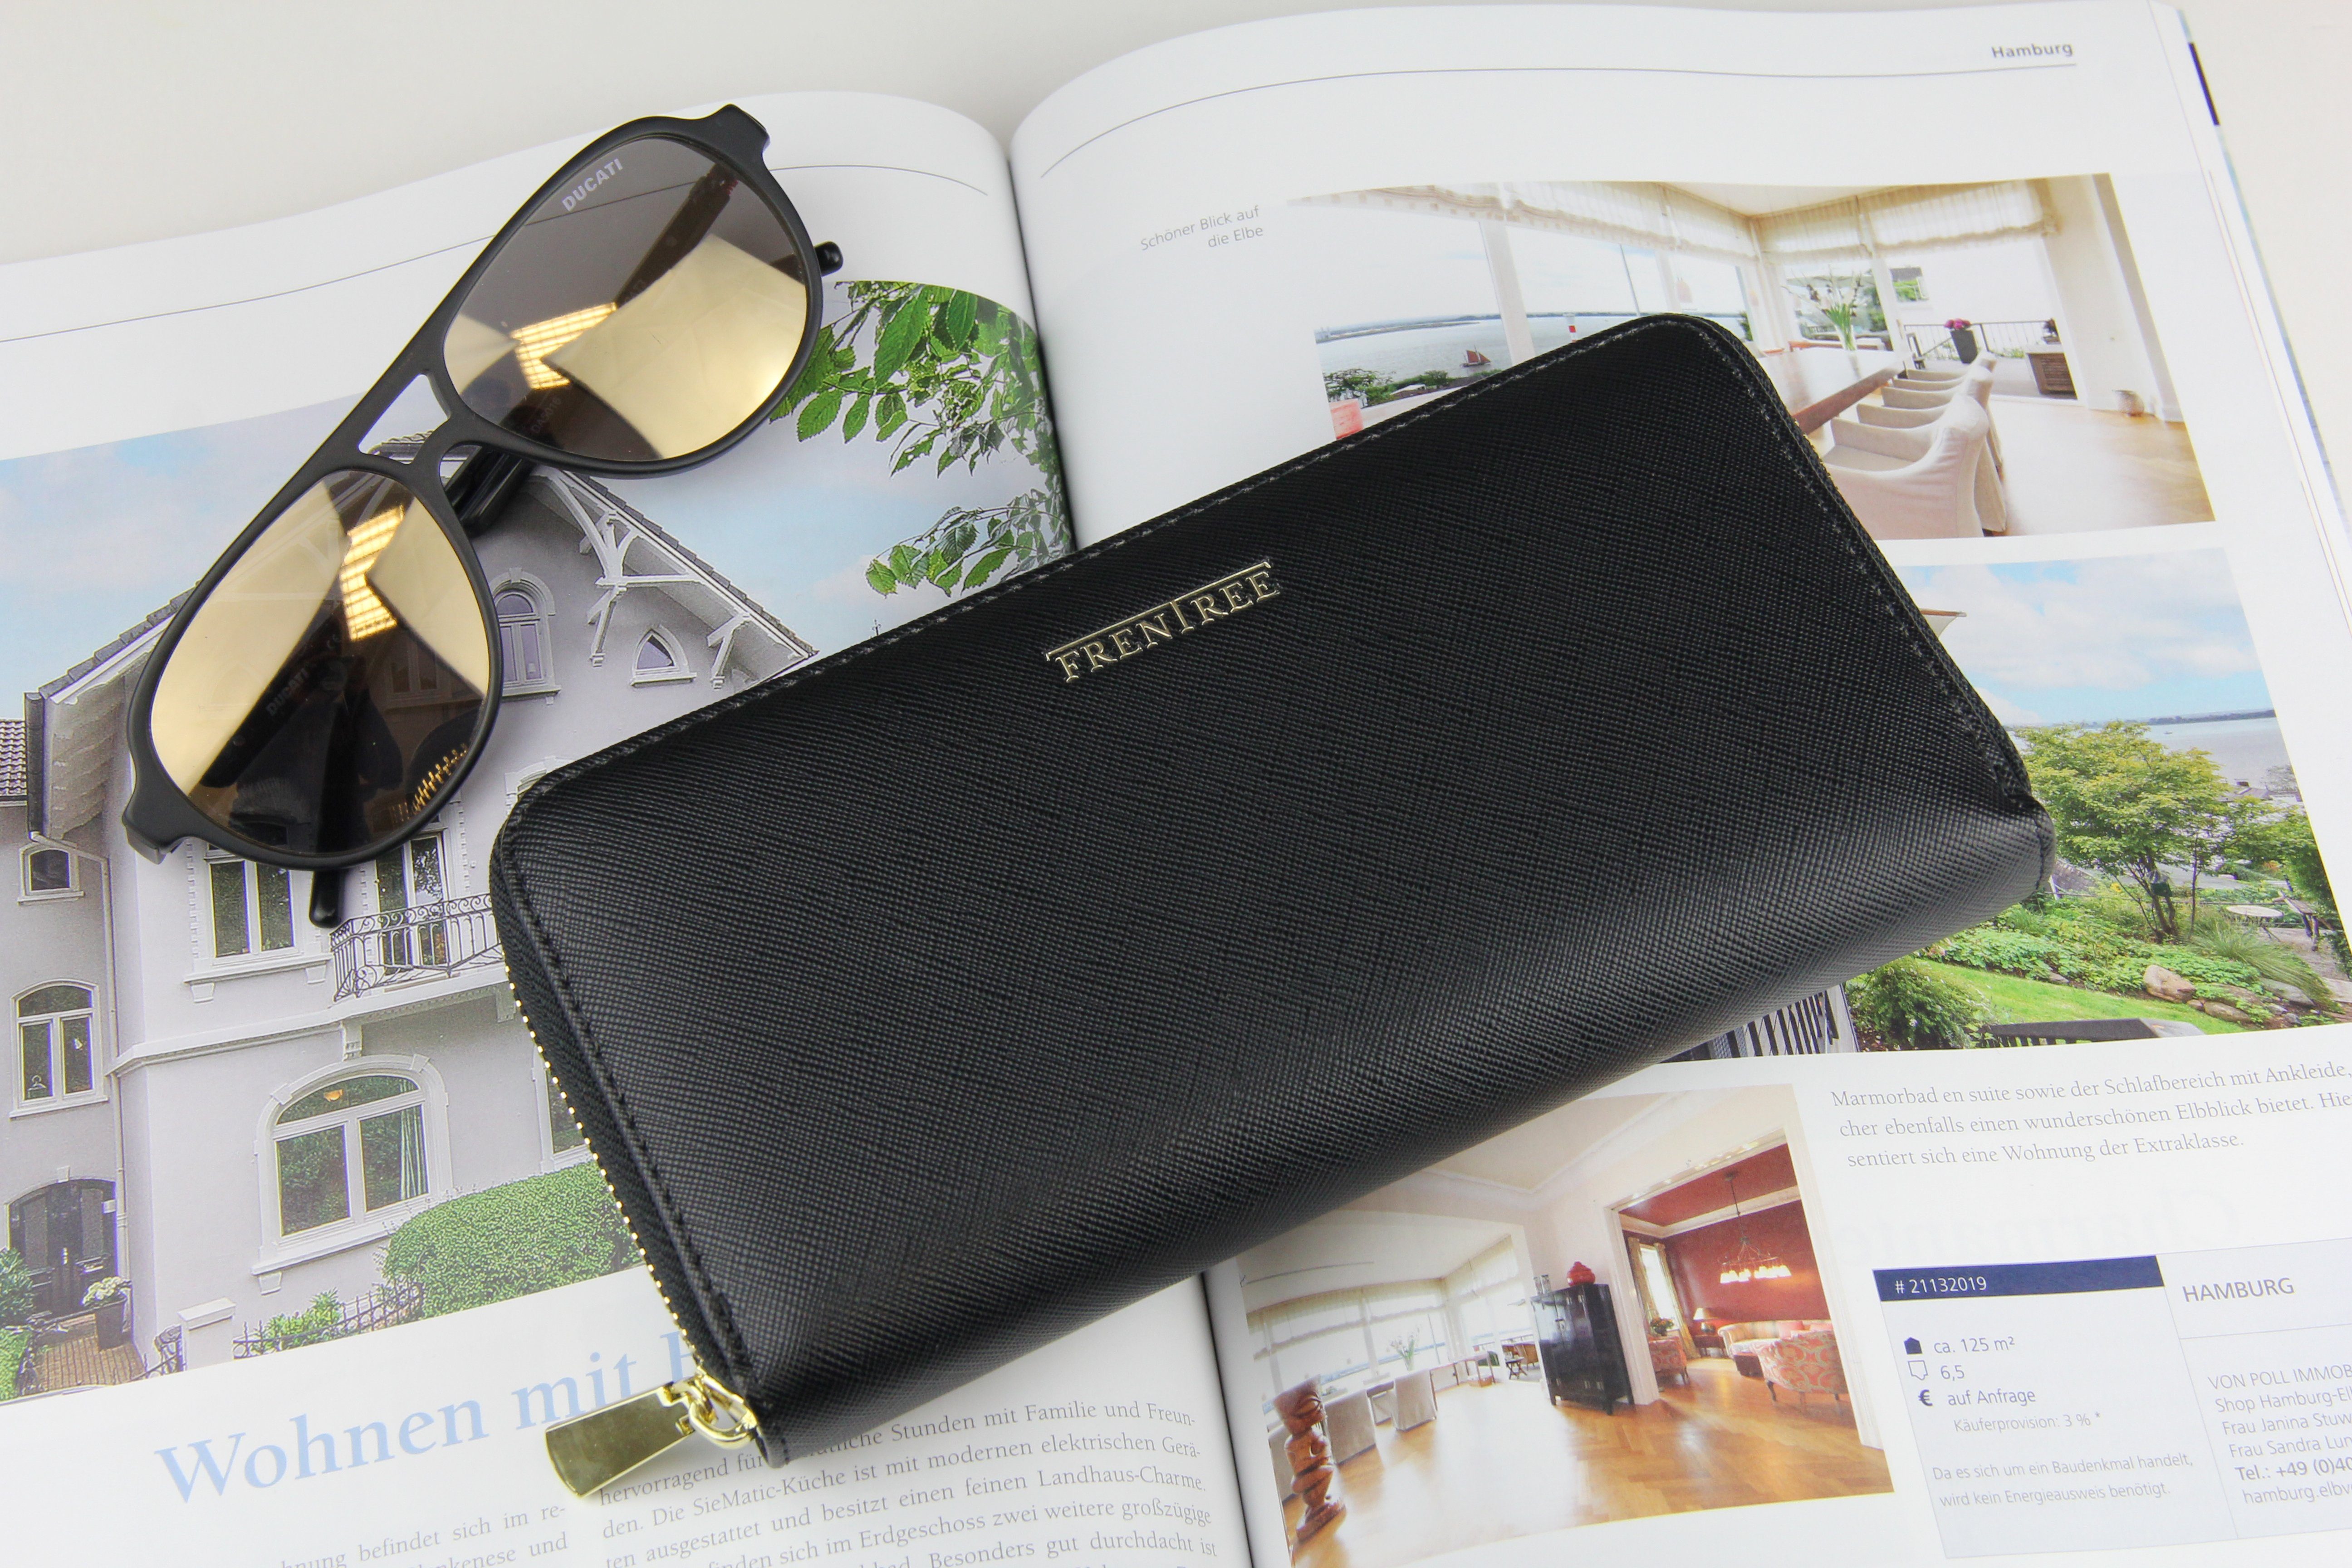 Portemonnaie Damen Frentree Geschenkbox mit RFID Geldbörse, Smartphonefach, Schutz, inkl. Weiß